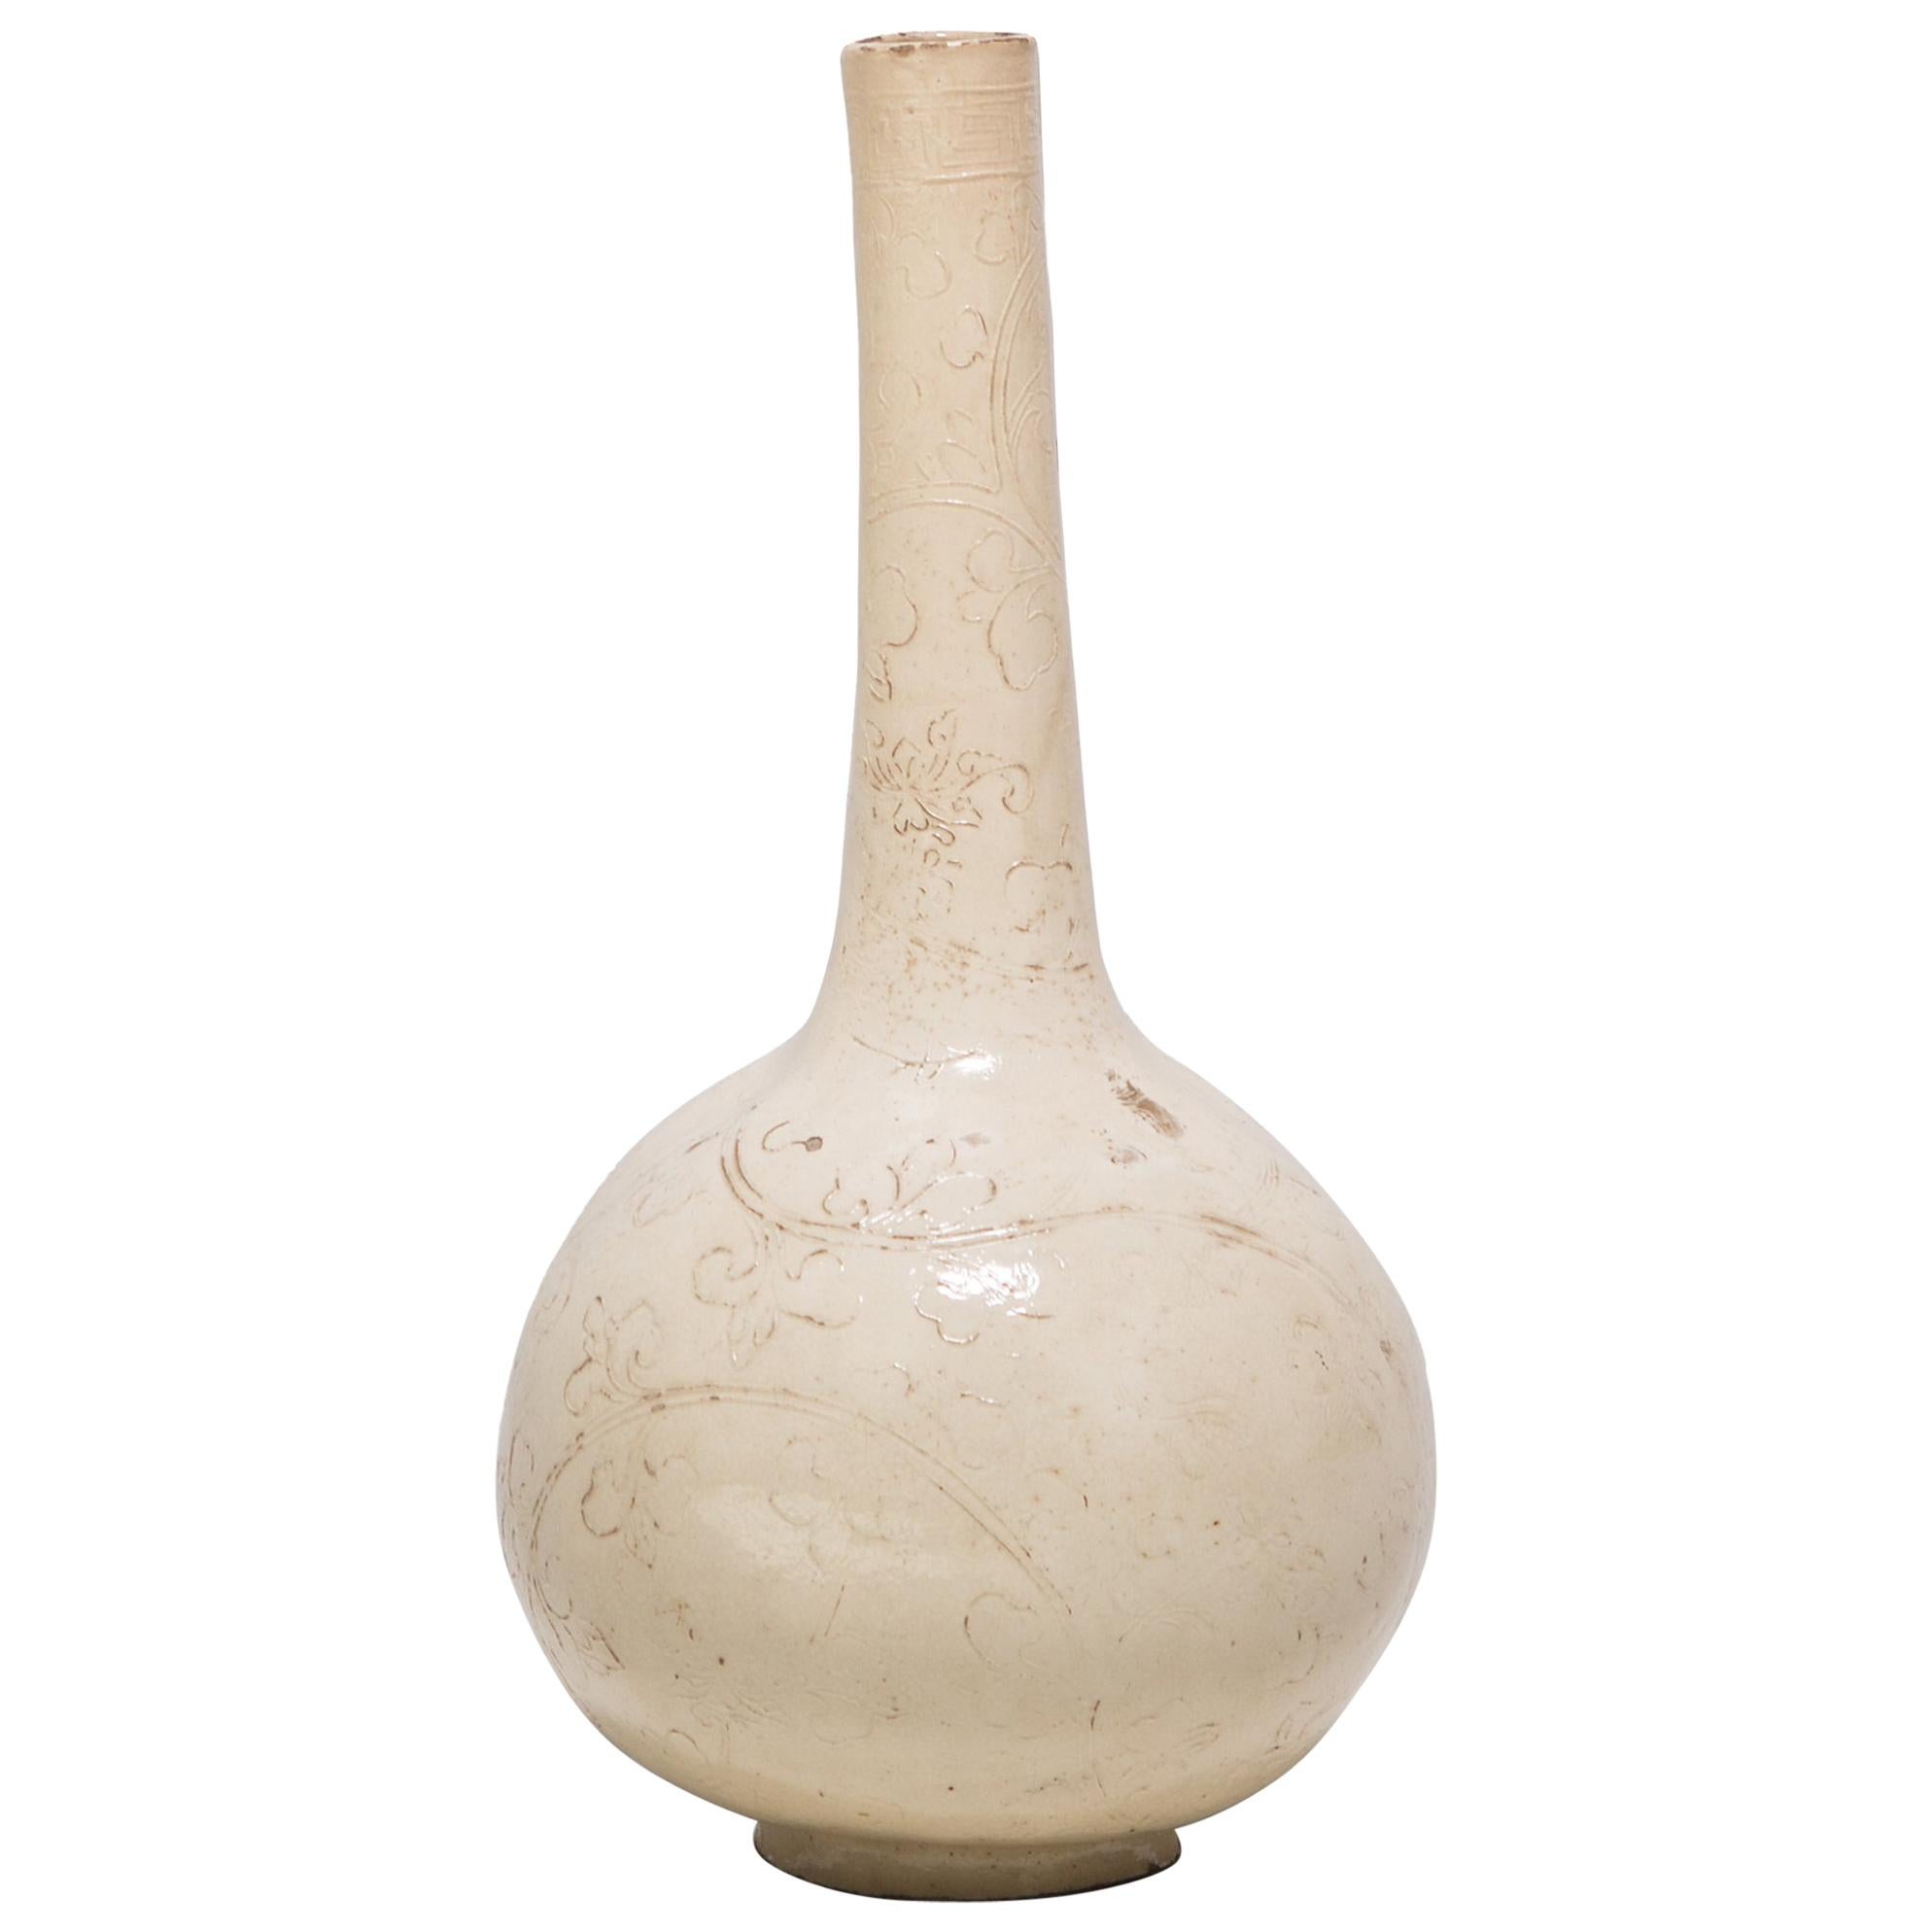 Chinese Dingyao Vase, c. 1100